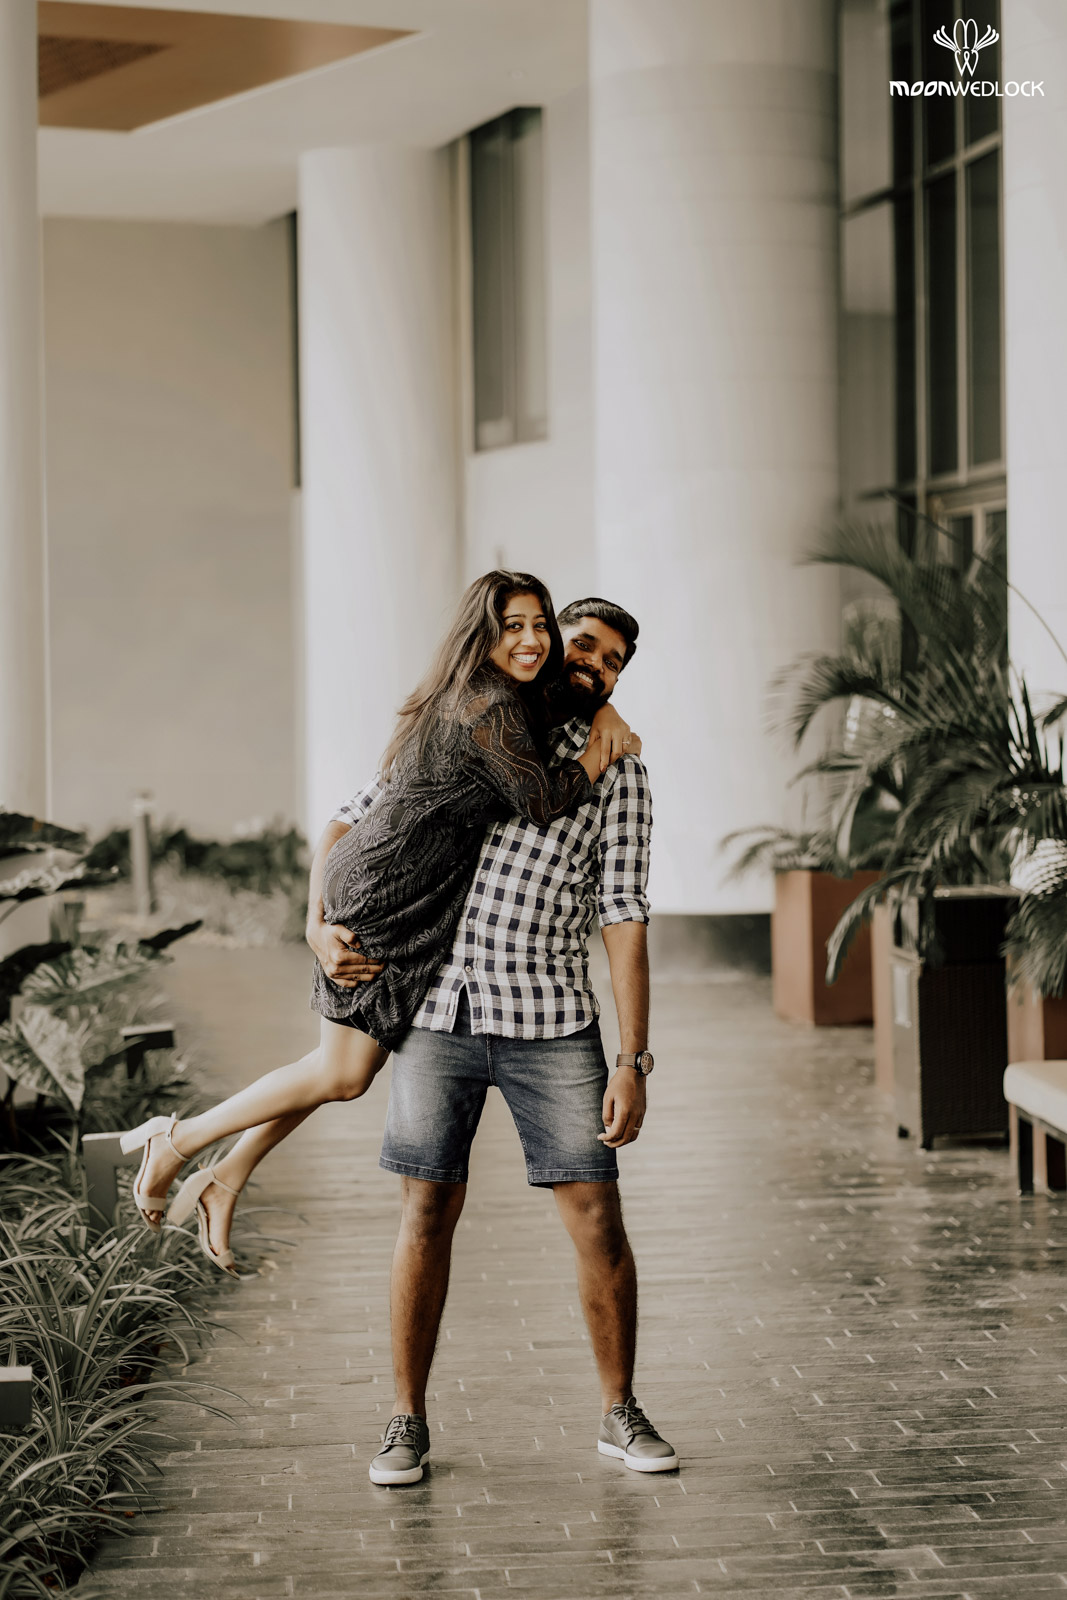 wedding-photographers-in-bangalore -moonwedlock (24)